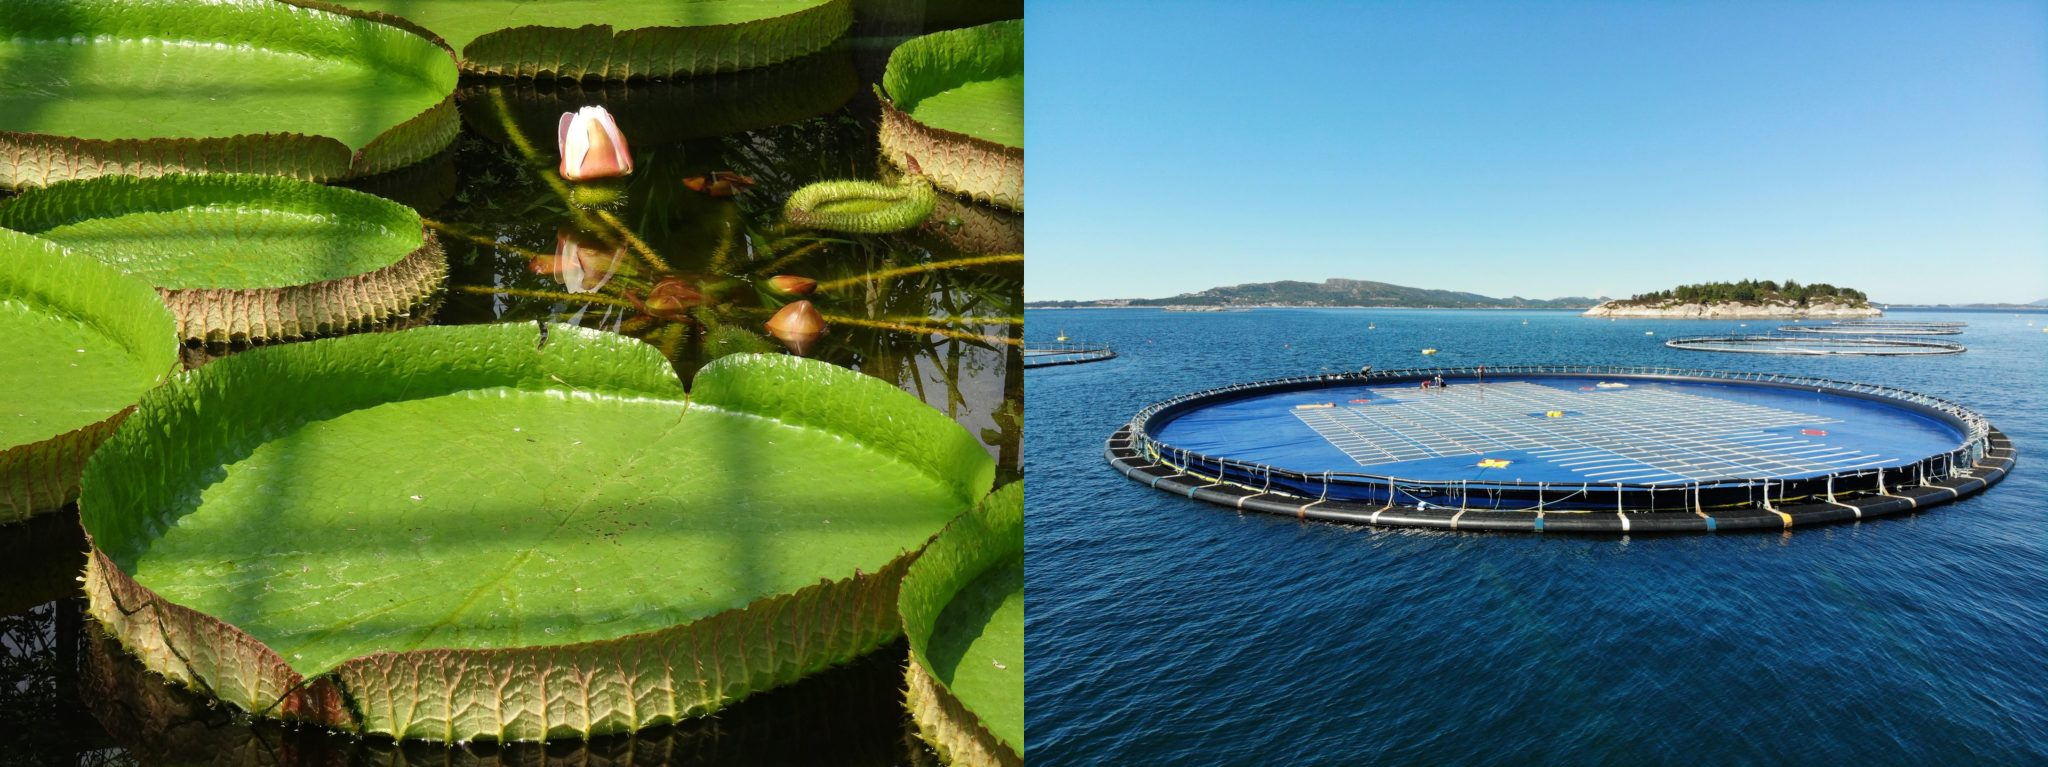 Lotusblomsten Victoria Amazonica og Ocean Sun-flyterne har mye til felles. De flyter på vannet, er forankret i havbunnen, og utnytter sollyset med hhv. fotosyntese og fotovoltaikk. Foto: Ocean Sun.